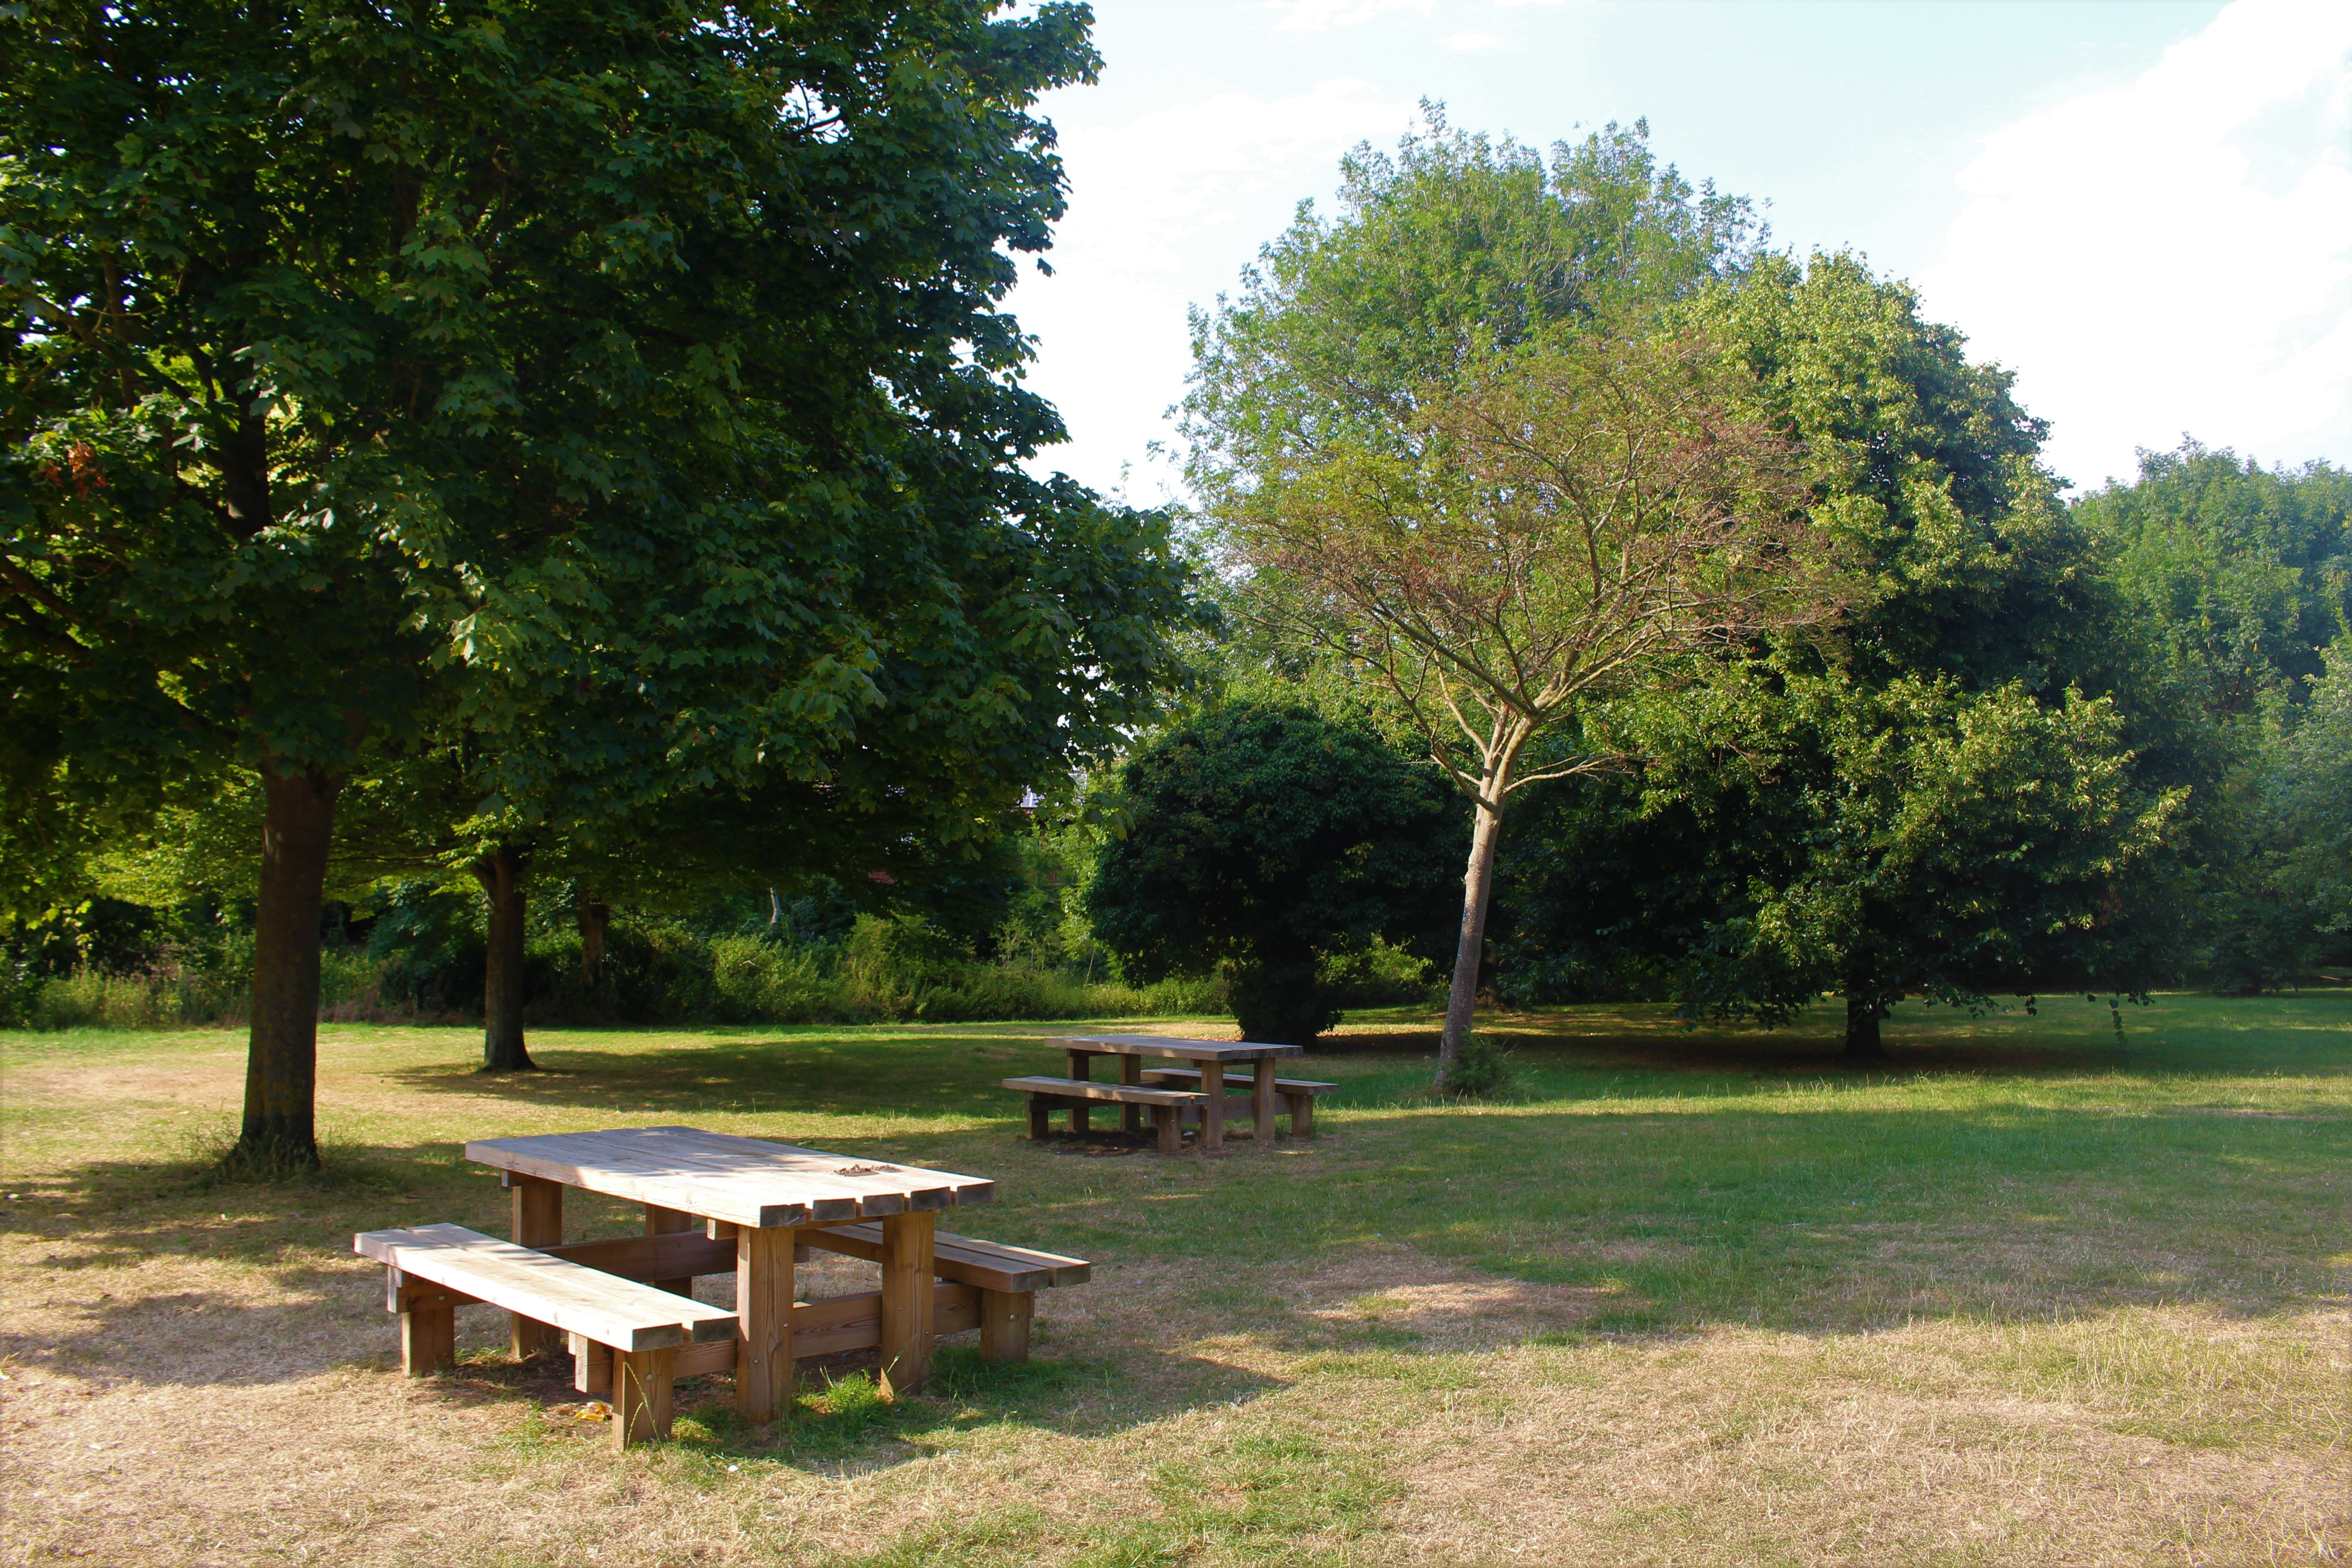 Picnic area in Queen Elizabeth Park